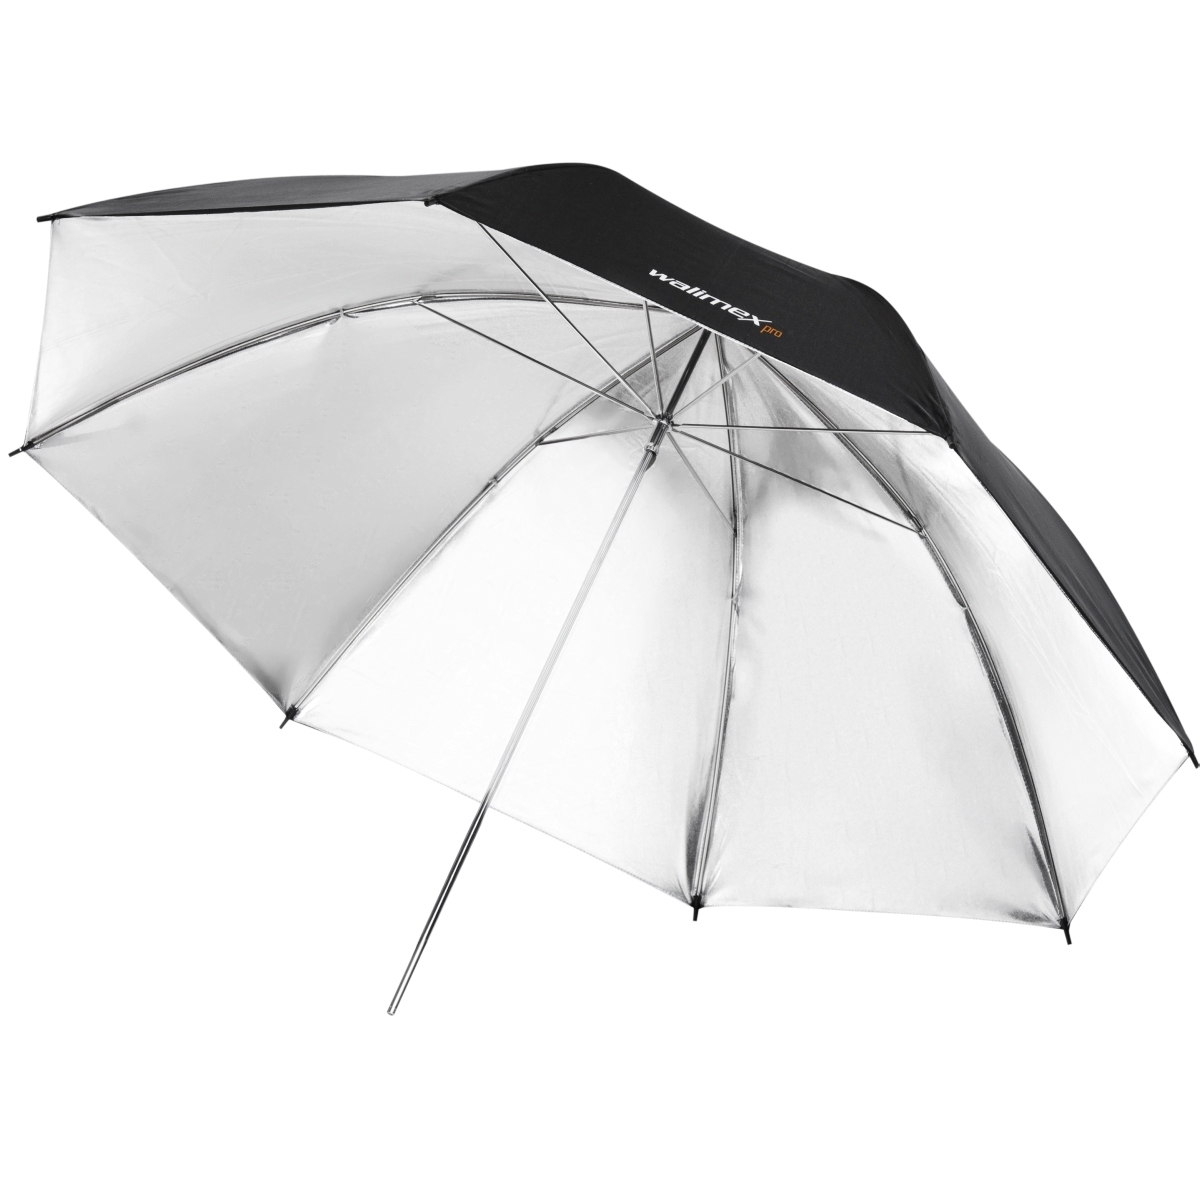 Walimex Reflex Umbrella black/silver 2 lay., 109cm